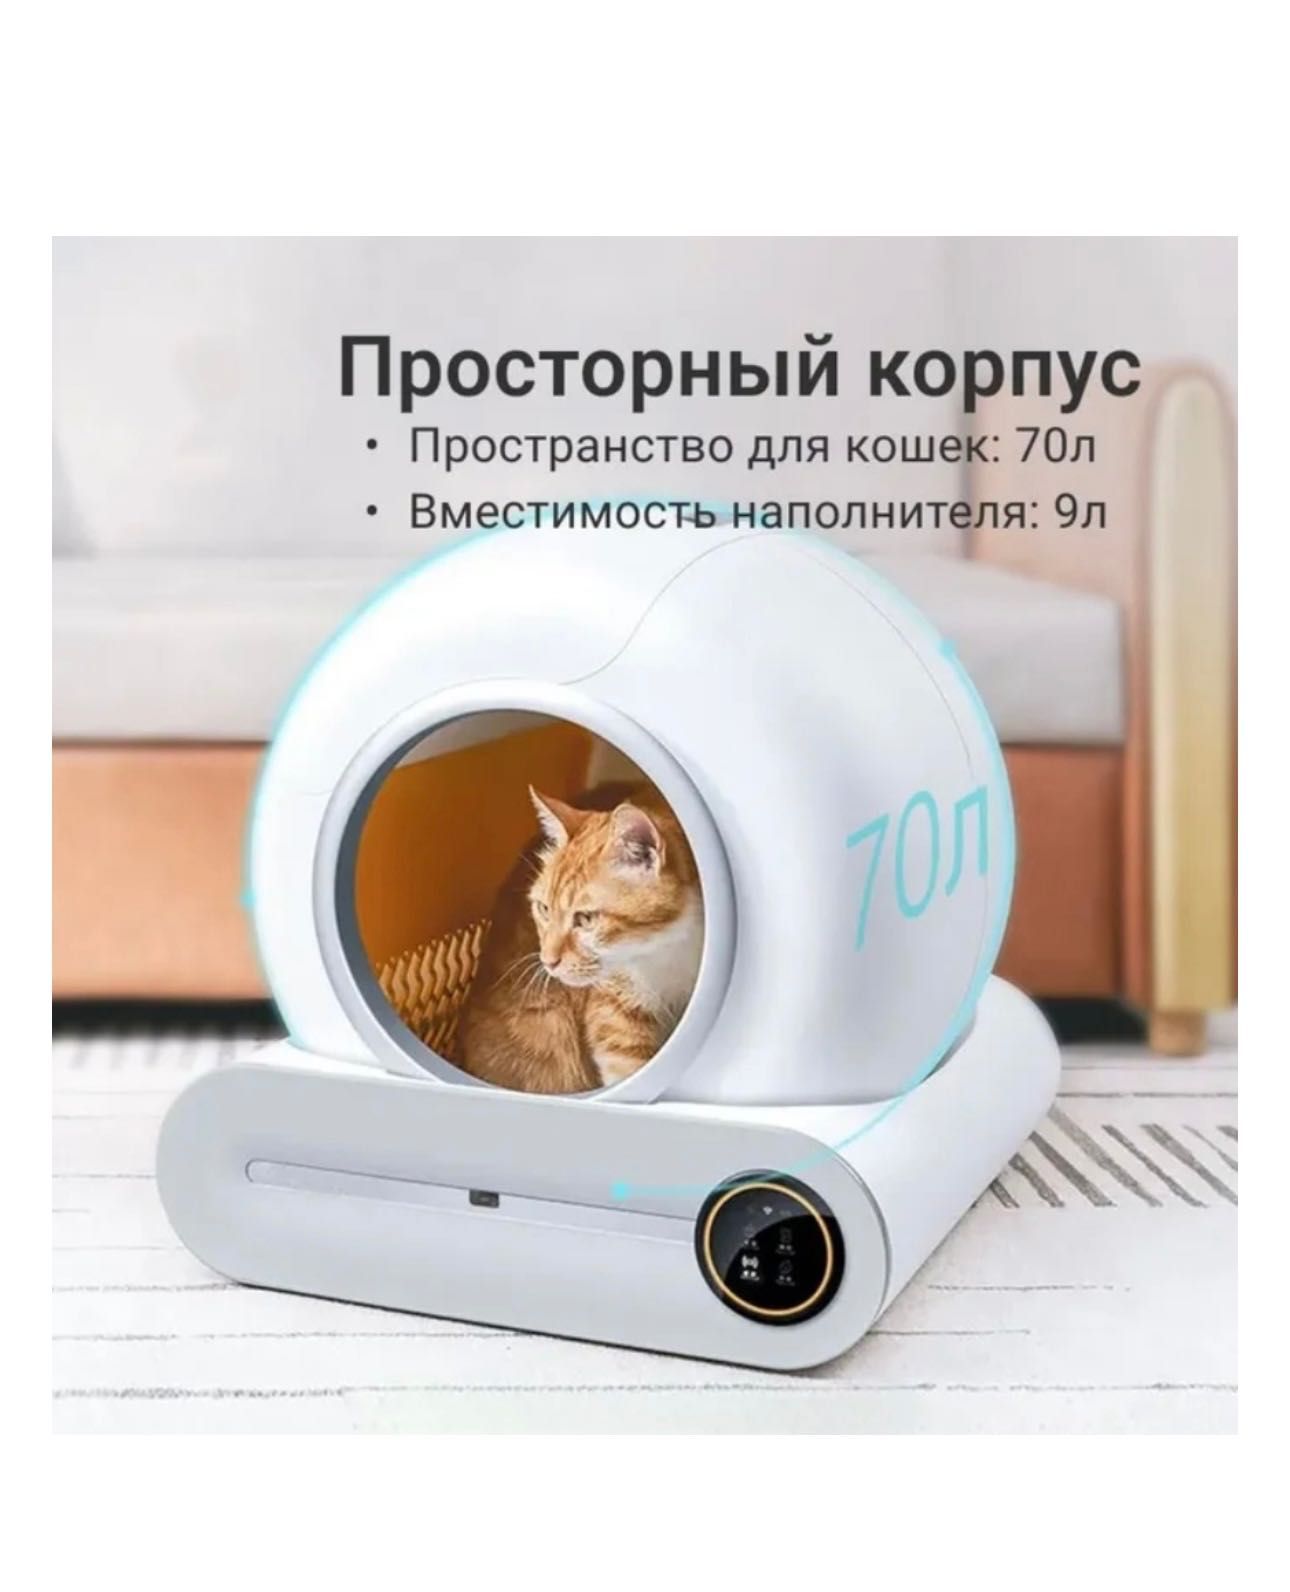 Автоматизированный туалет для кошек